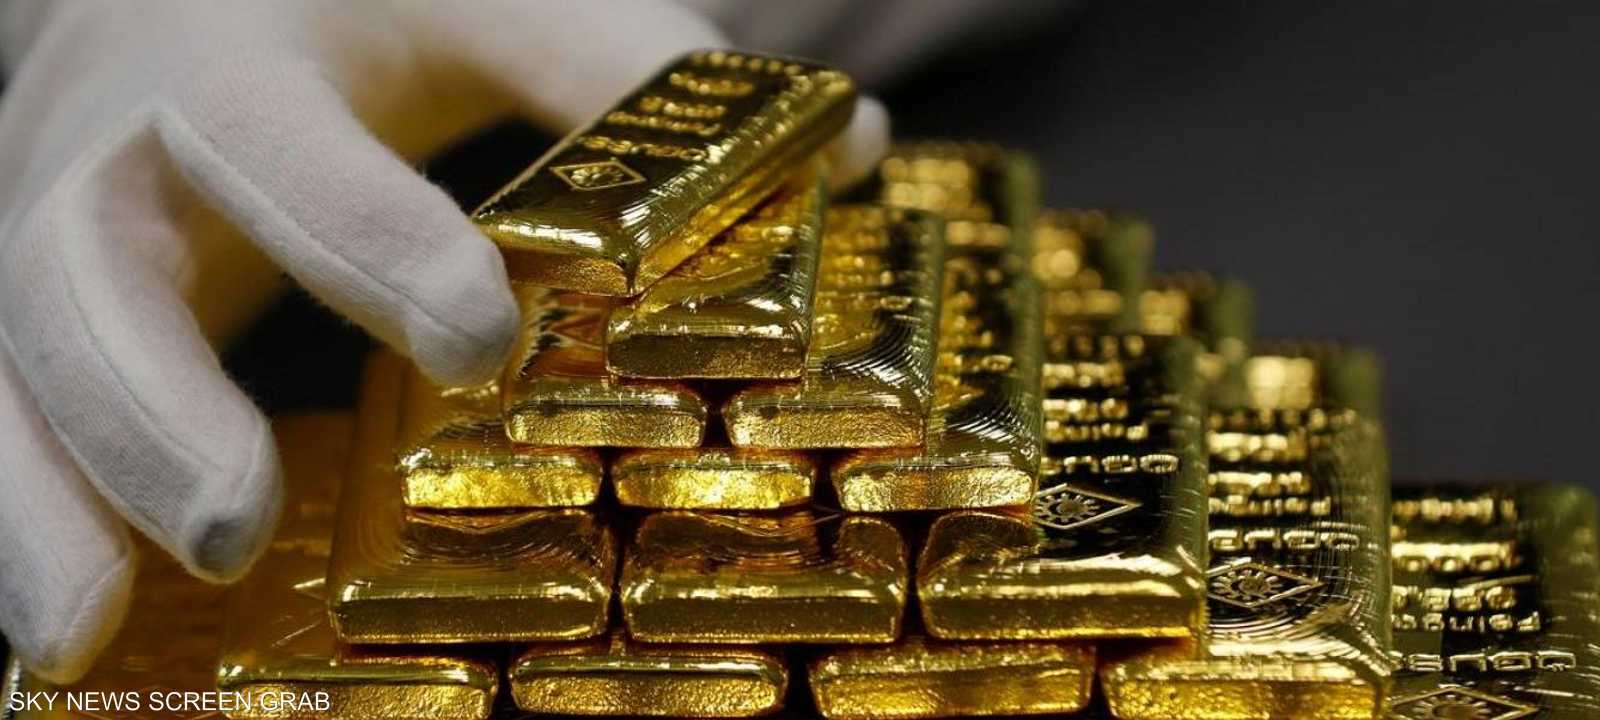 قفزة هائلة في مجال صناعة الذهب تشهدها مصر في الآونة الأخيرة